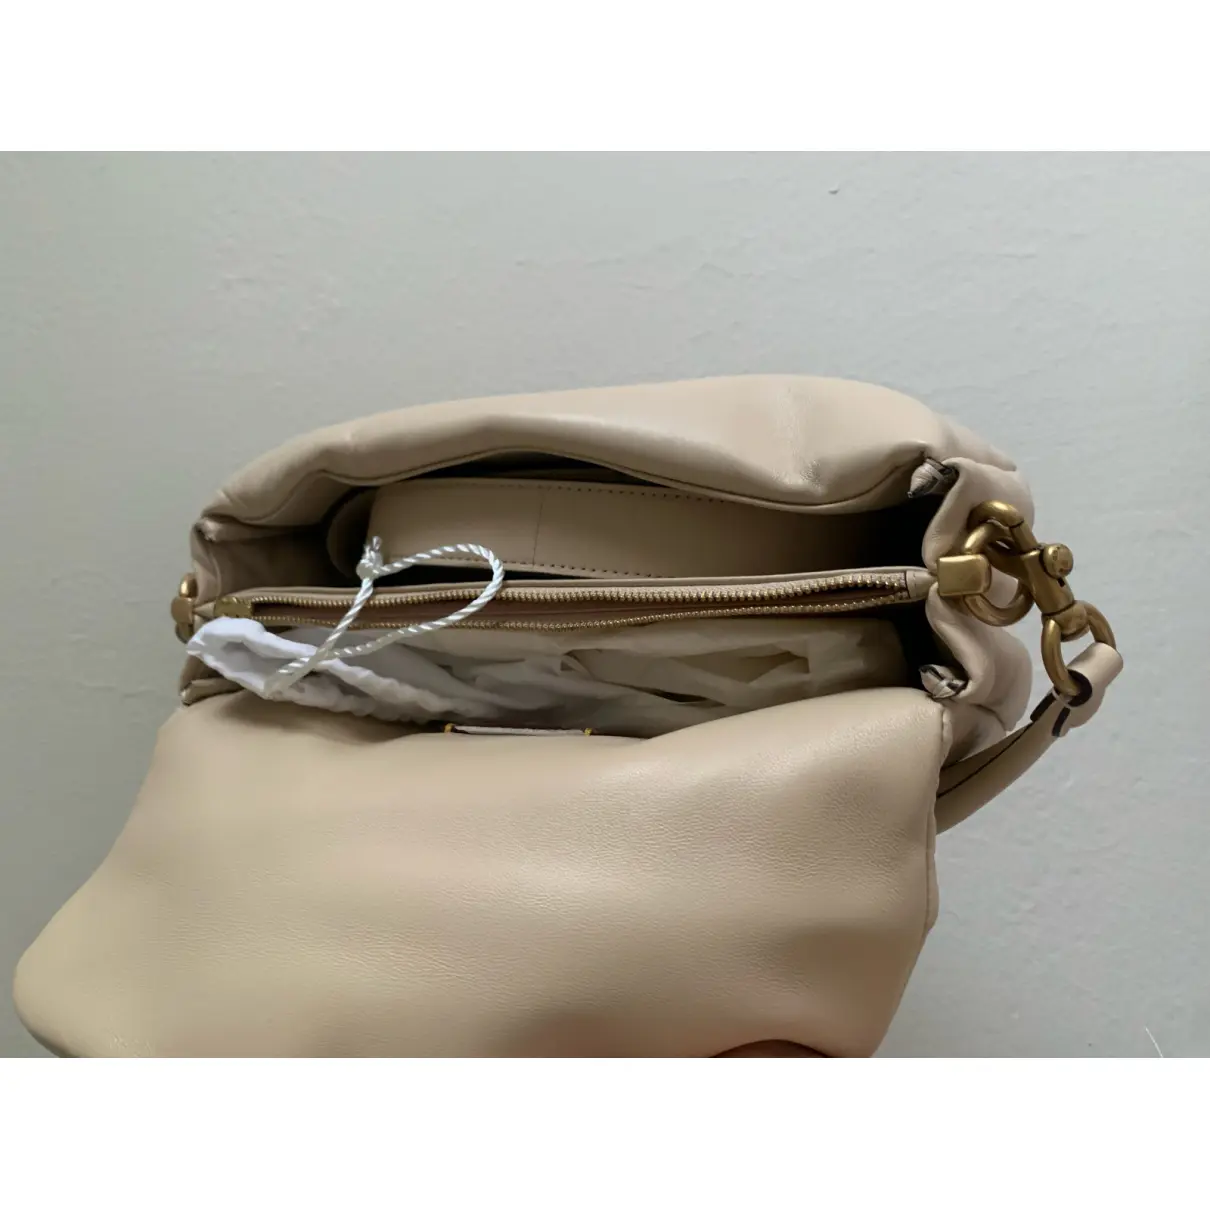 Pillow Tabby leather handbag Coach